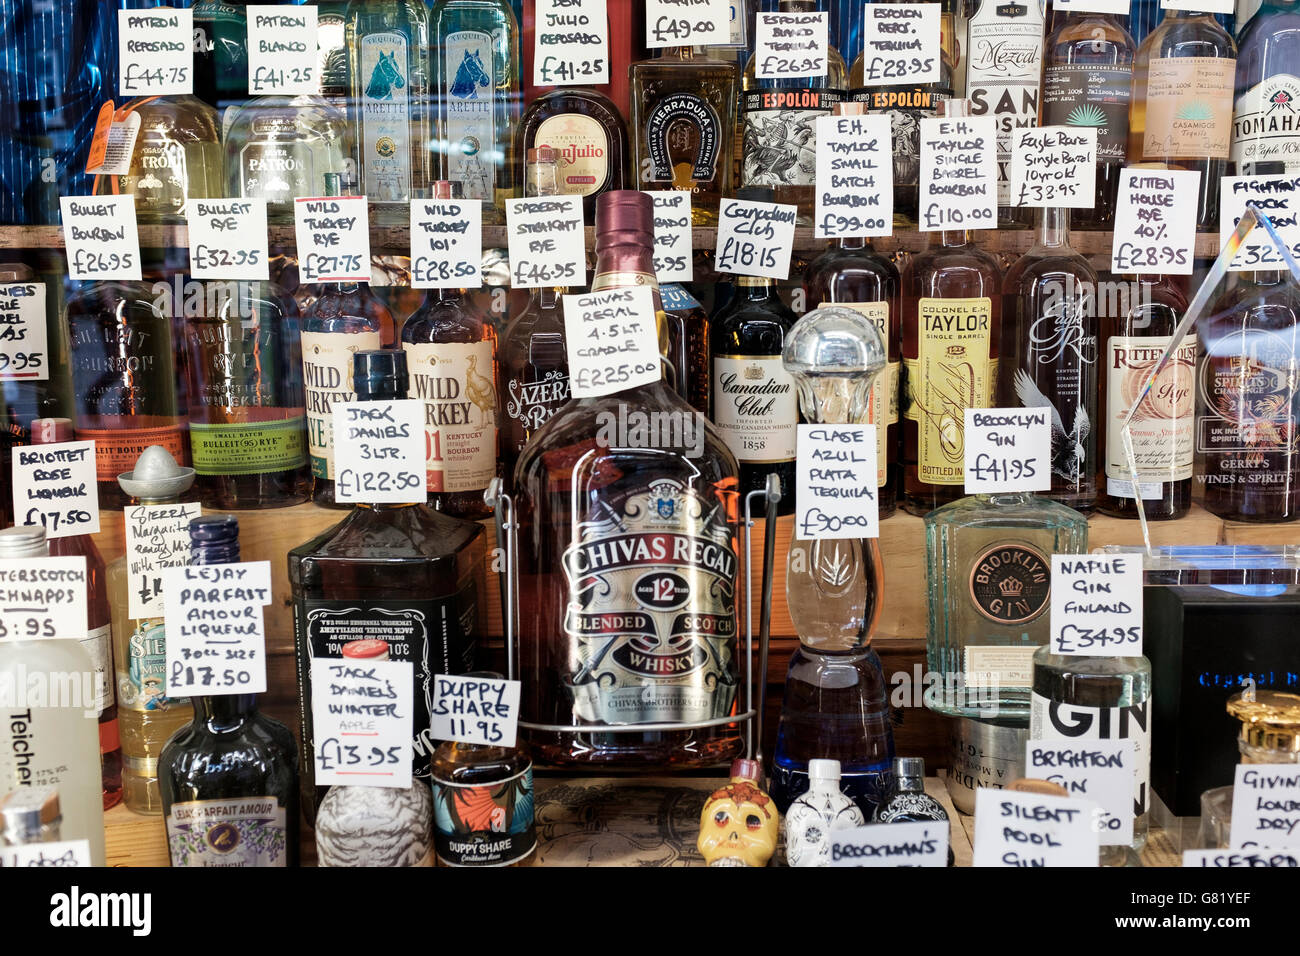 UK, London, Alkohol auf dem Display in den Regalen der off-Lizenz shop Stockfoto